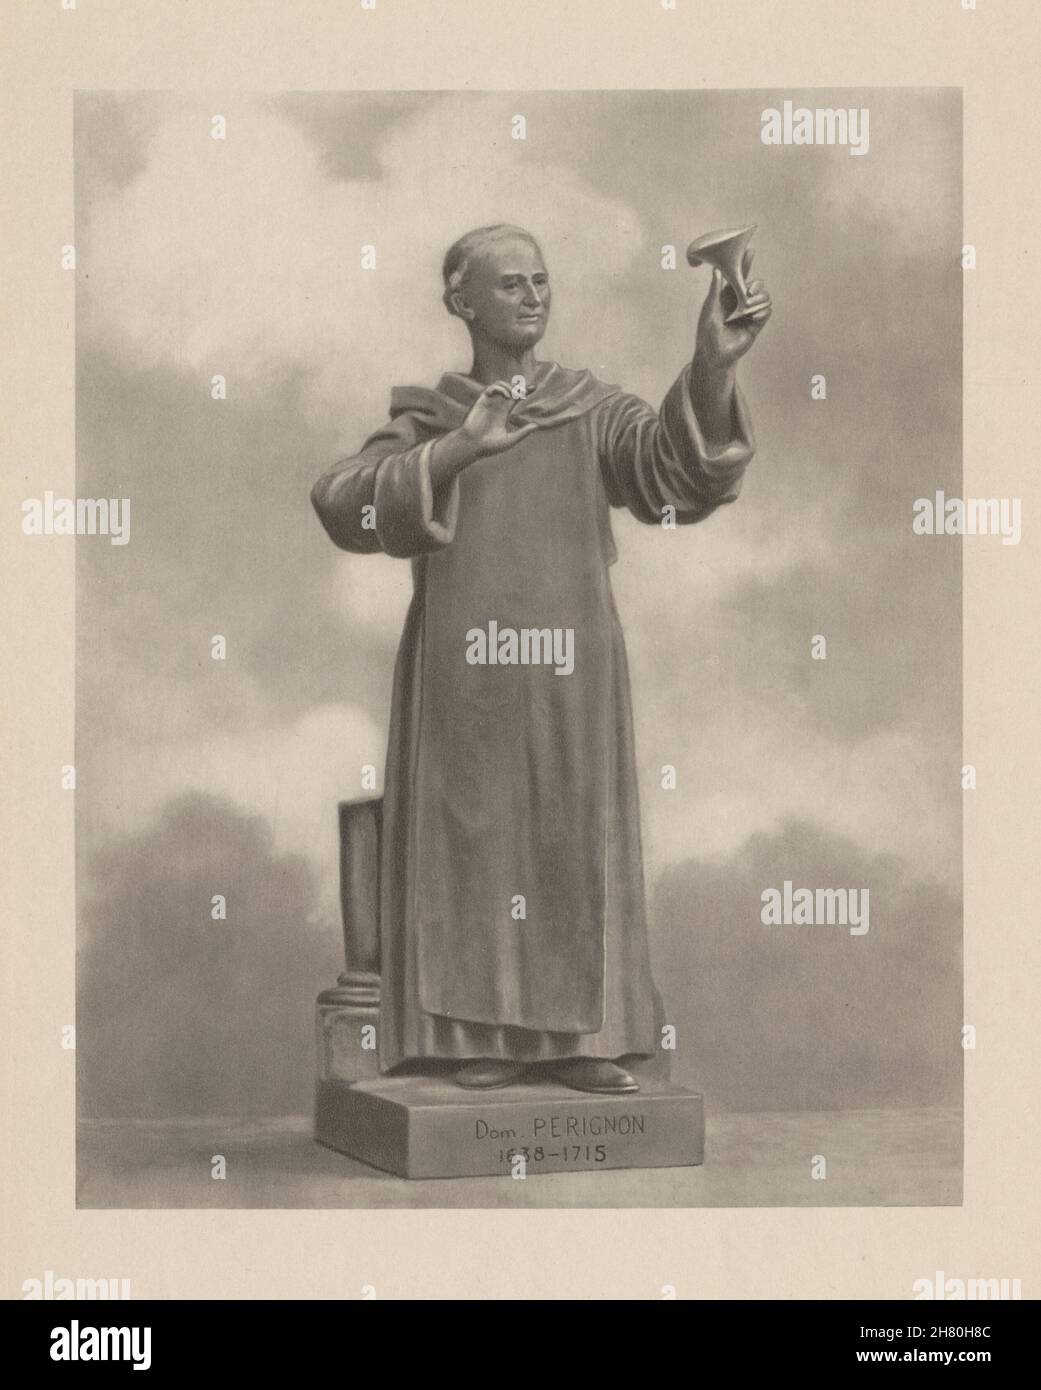 Dom Perignon 1638-1715, monaco benedettino francese. Sviluppatore di Champagne 1944 Foto Stock